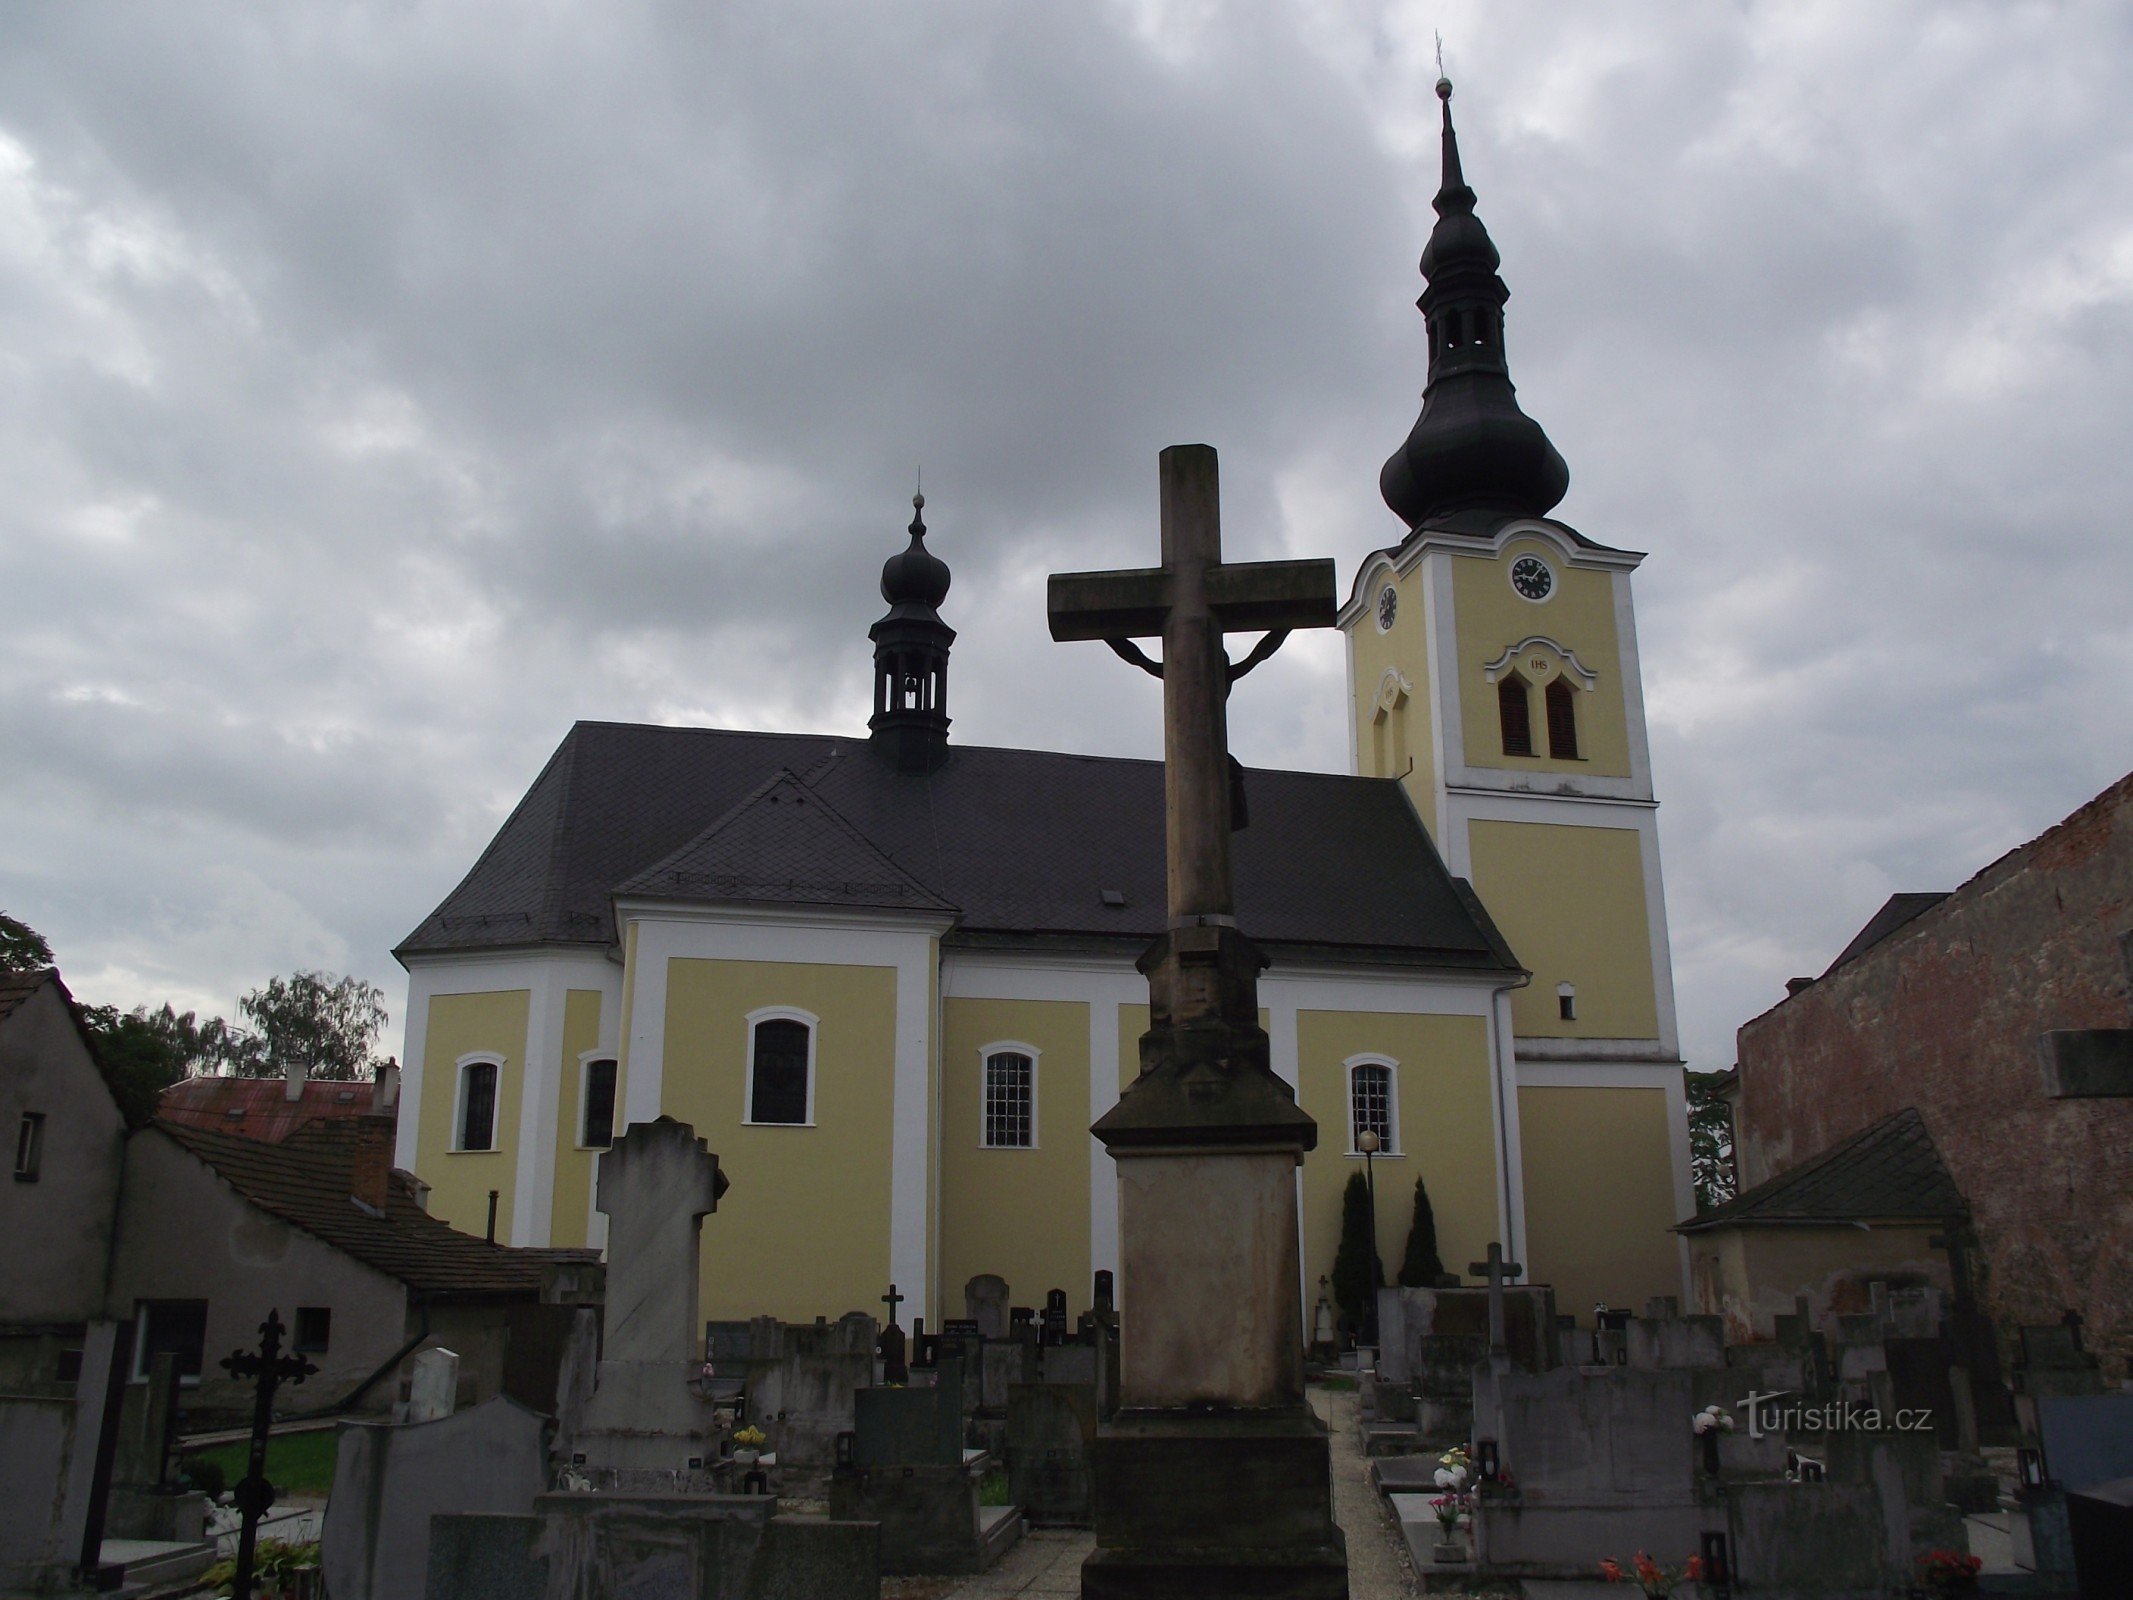 Moravičany – selo puno (ne samo malih) spomenika